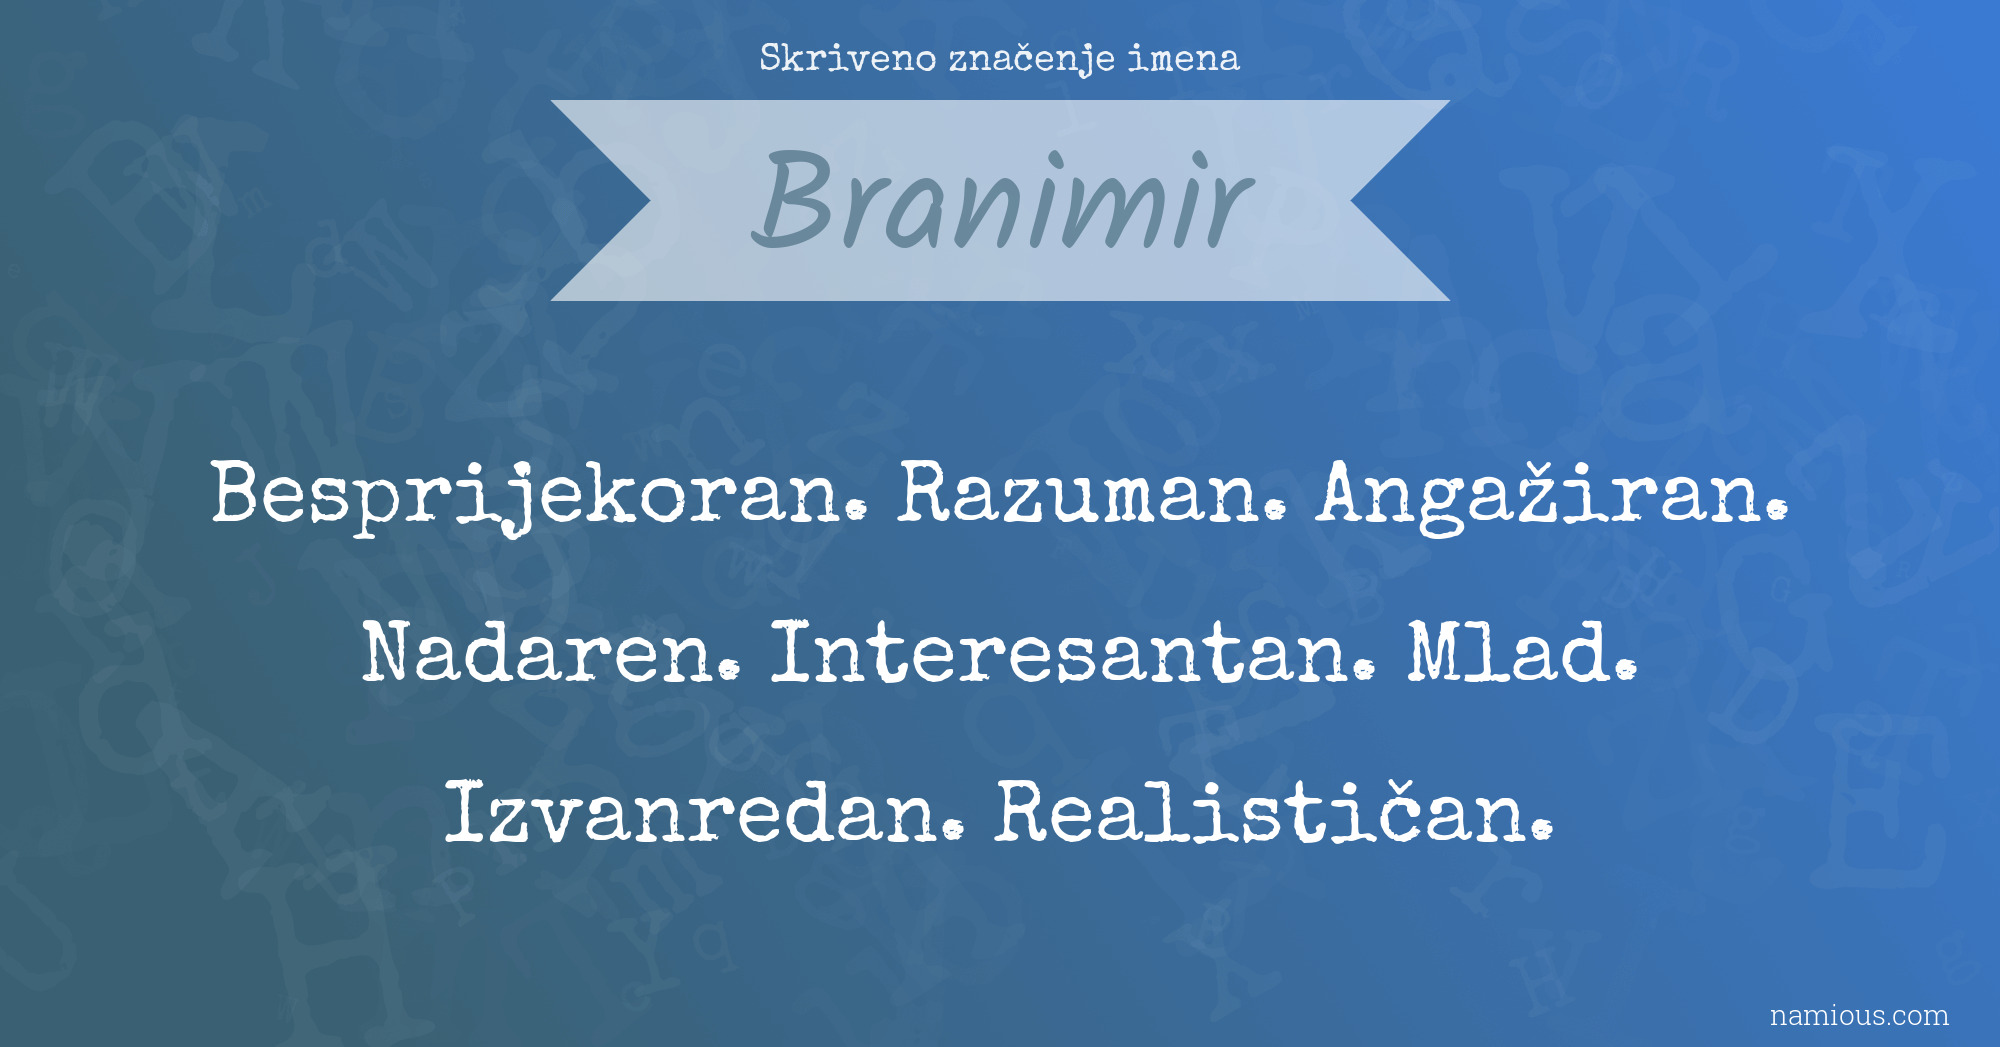 Skriveno značenje imena Branimir